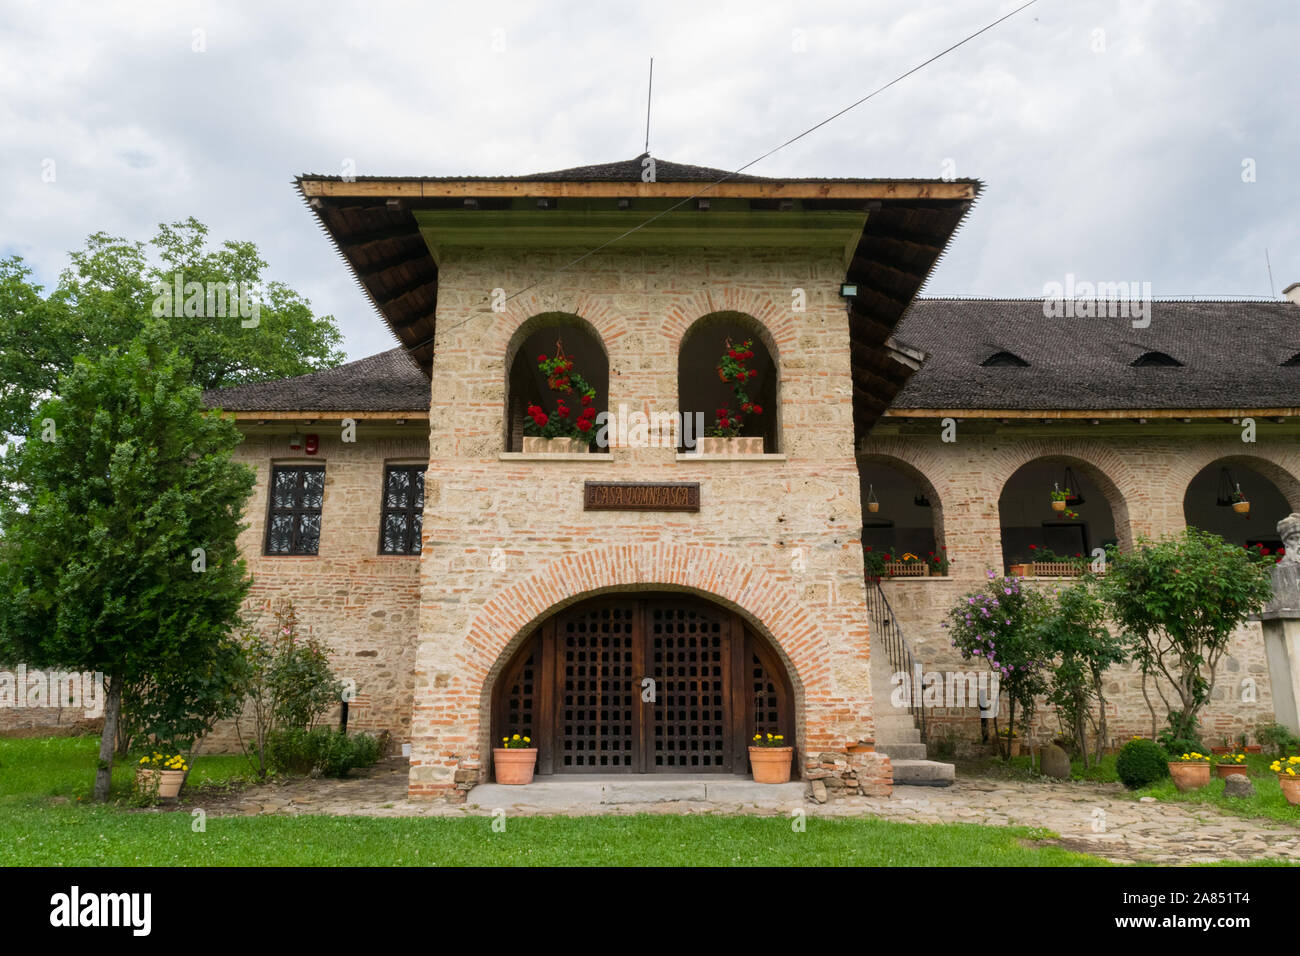 Brebu, Prahova, Romania - 04 agosto 2019: Il Royal House Museum edificio dal monastero Brebu complesso situato in Brebu, Prahova. Foto Stock